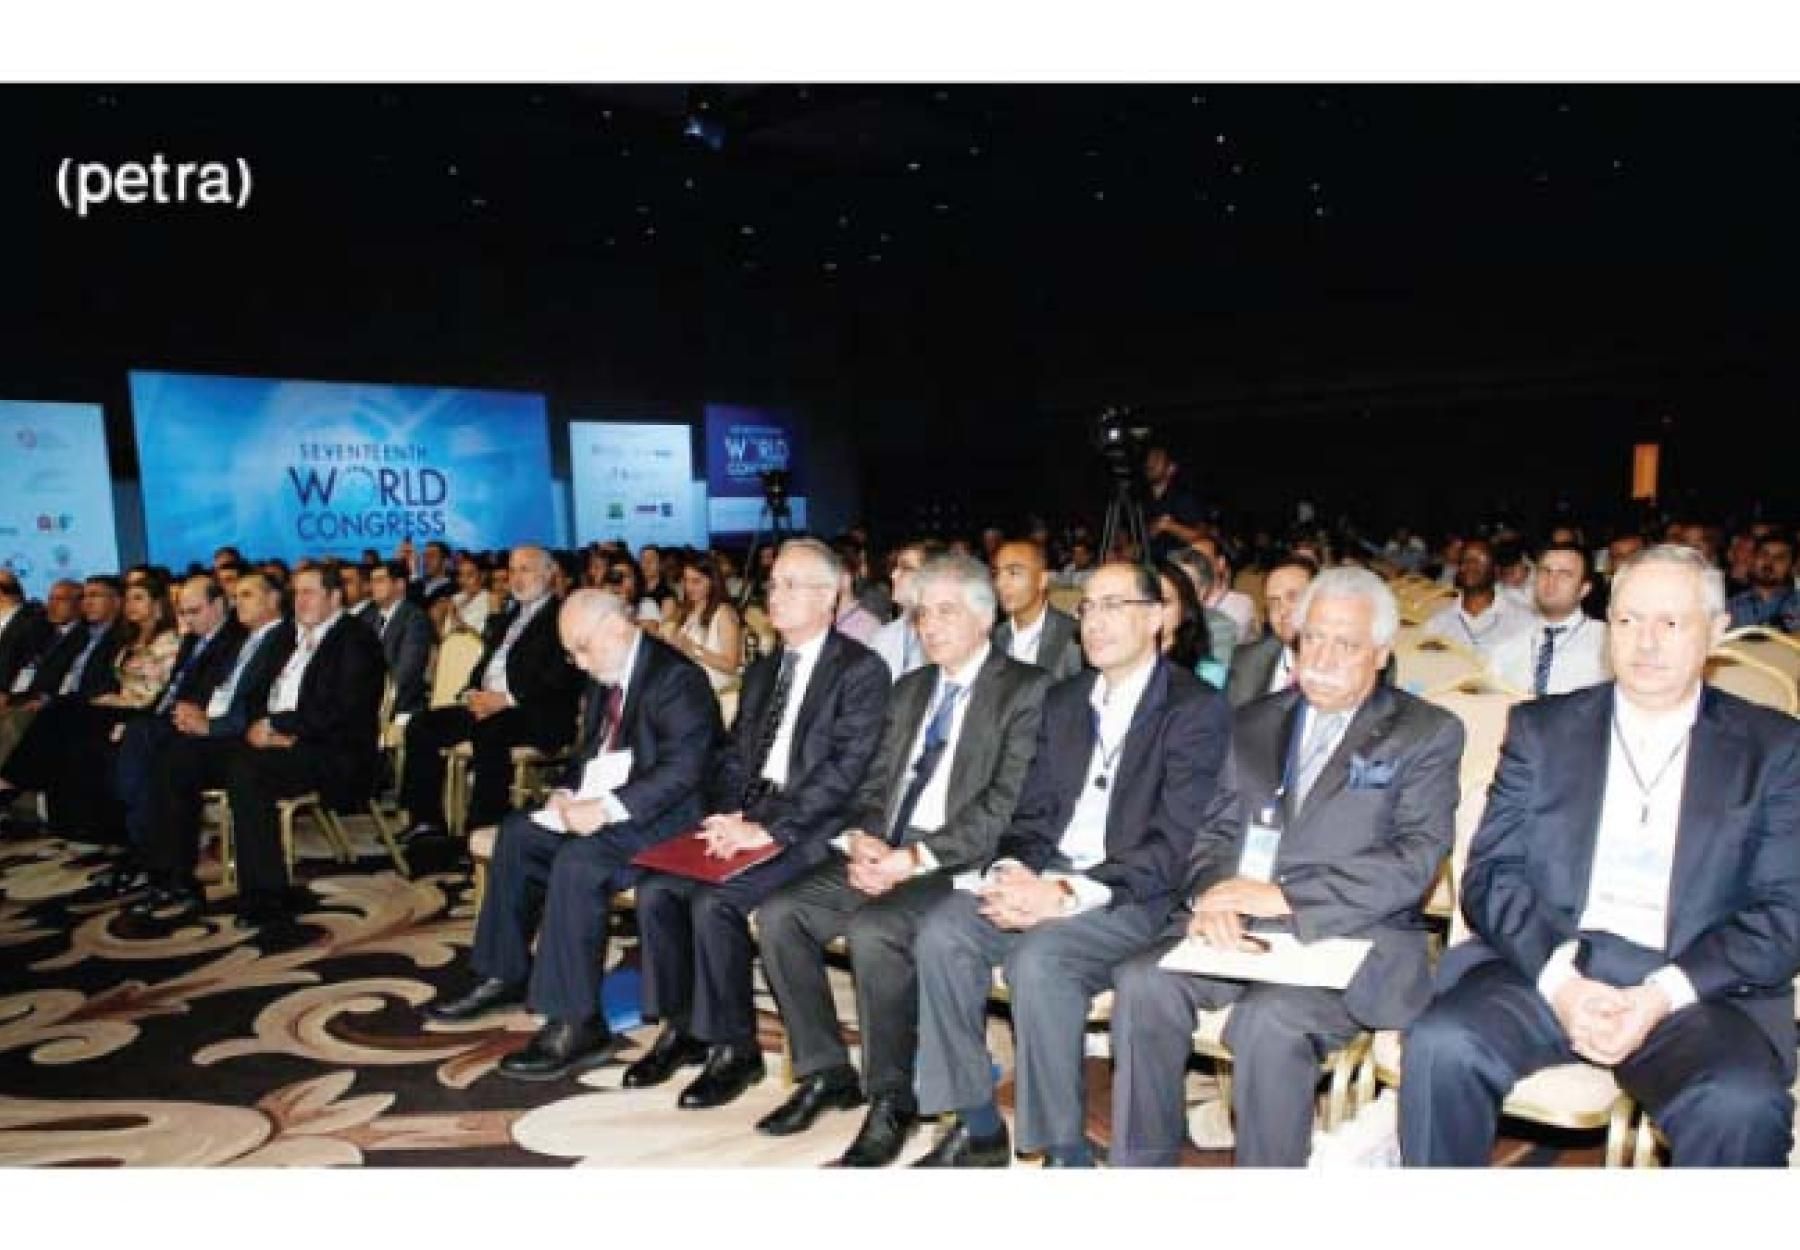 العربية في الملتقى الاقتصادي العالمي في البحر الميت